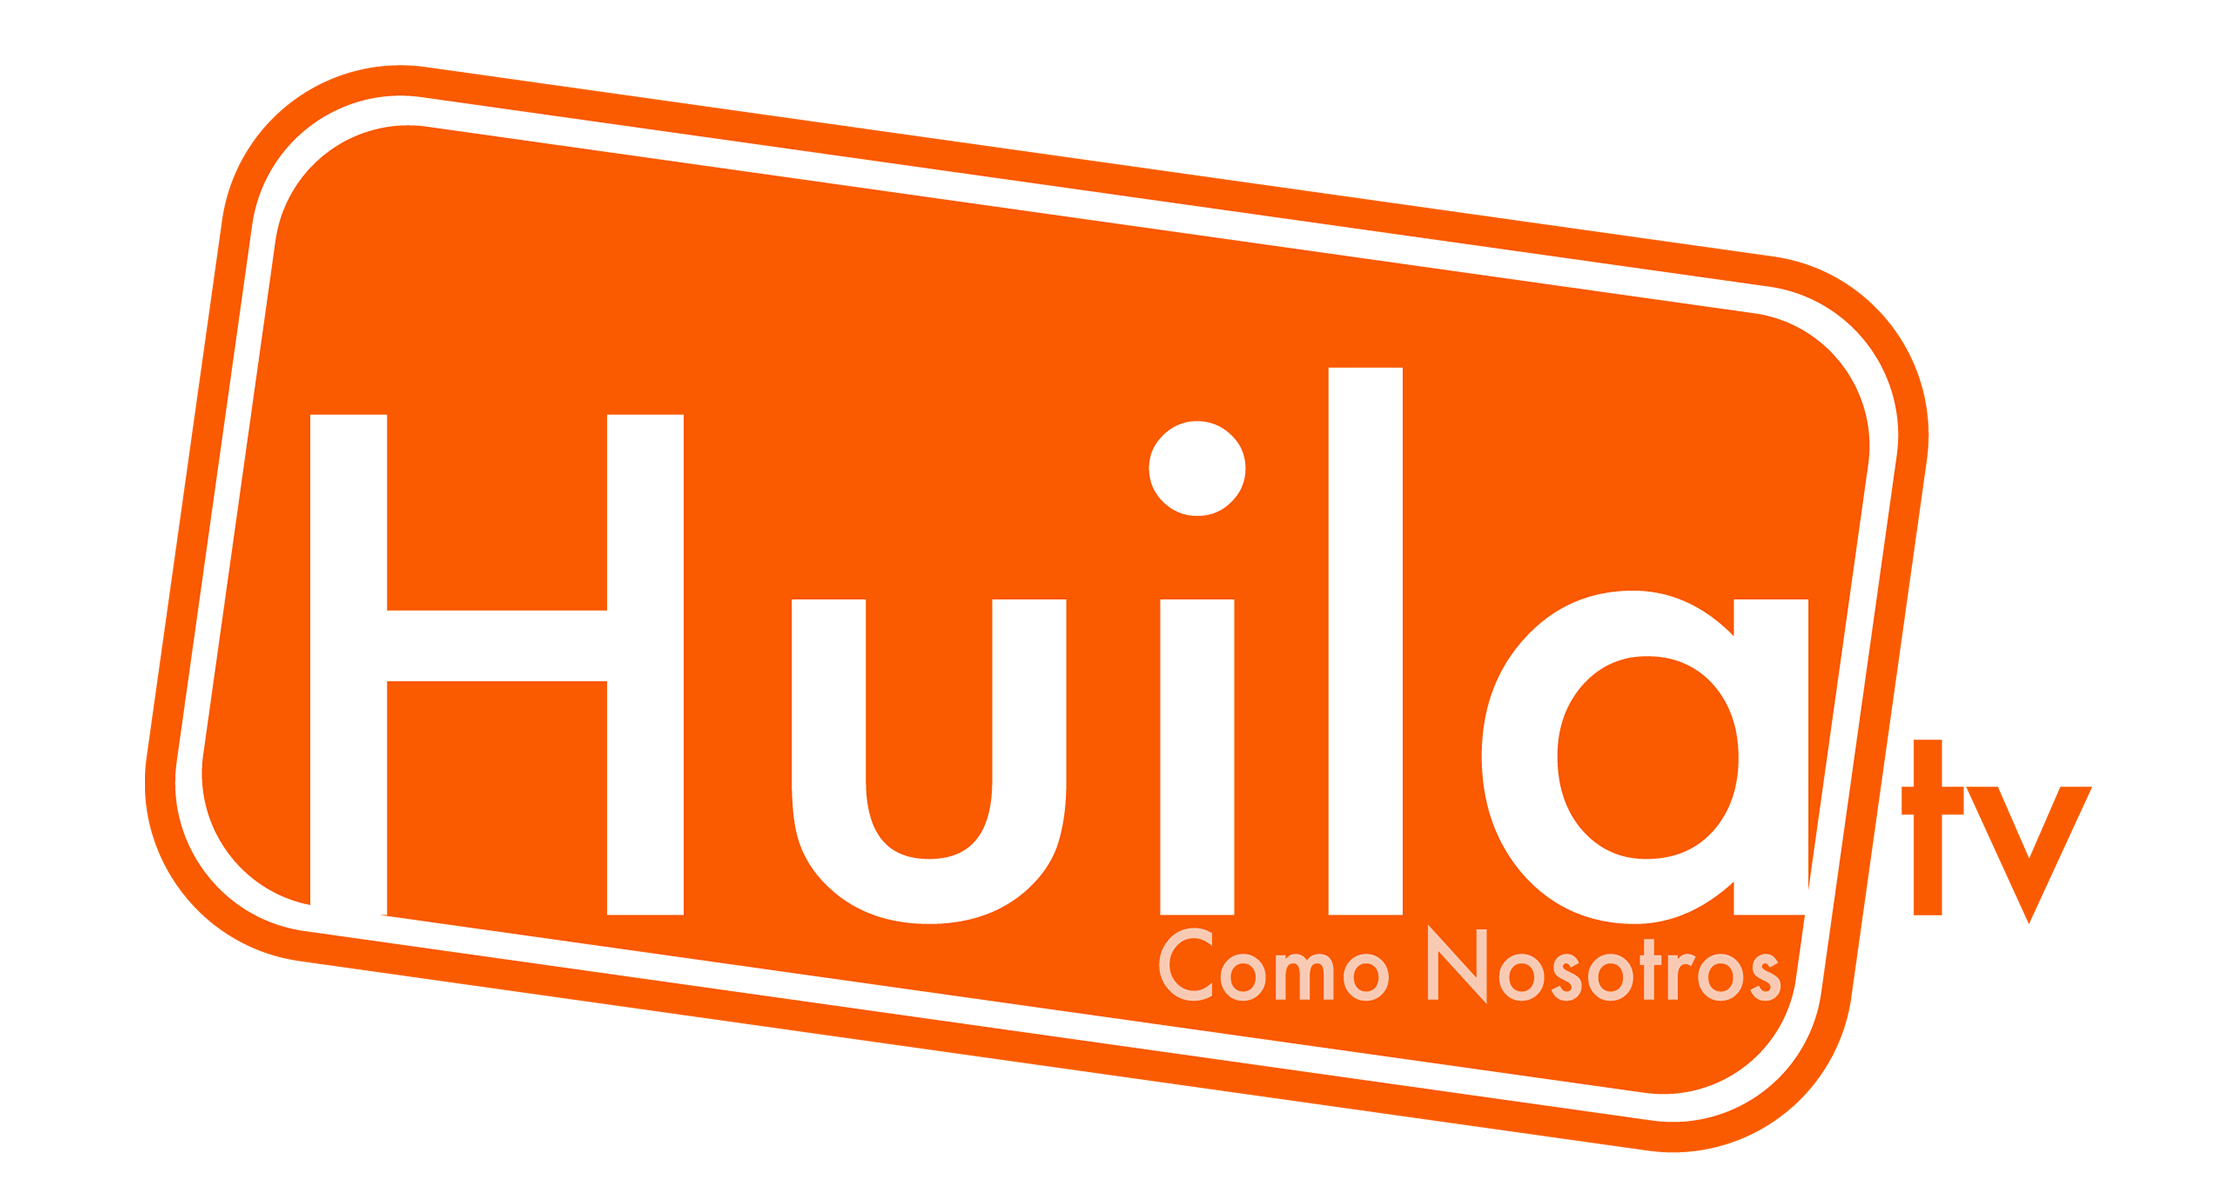 Huila TV